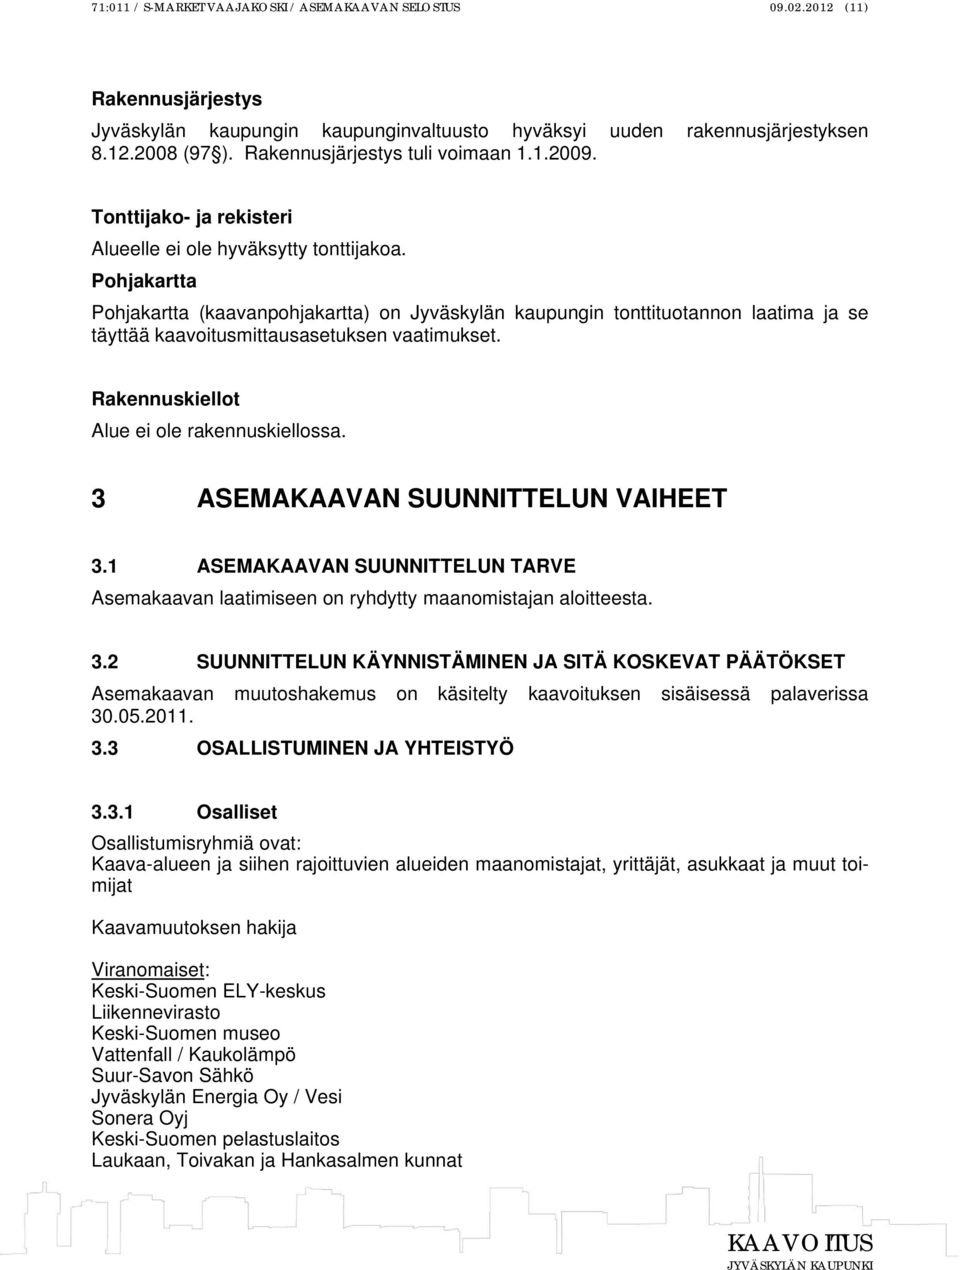 Pohjakartta Pohjakartta (kaavanpohjakartta) on Jyväskylän kaupungin tonttituotannon laatima ja se täyttää kaavoitusmittausasetuksen vaatimukset. Rakennuskiellot Alue ei ole rakennuskiellossa.